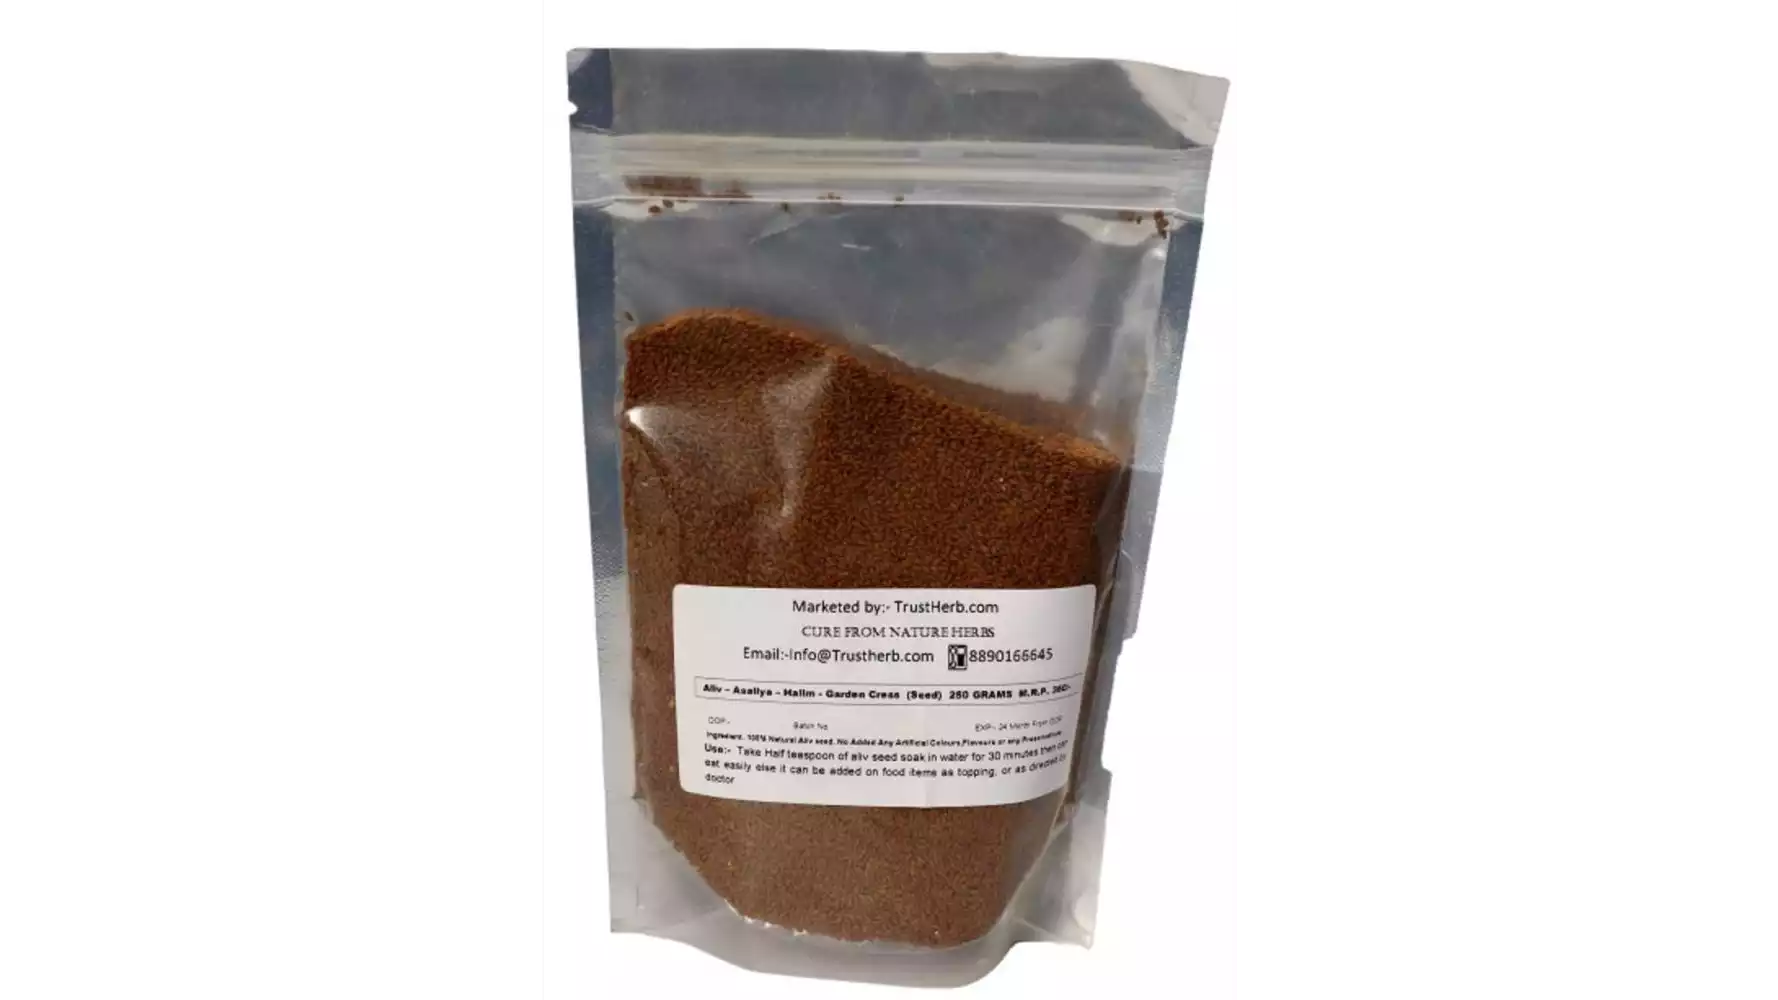 TrustHerb Aliv Seed - Asaliya - Halim - Garden Cress Powder (250g)